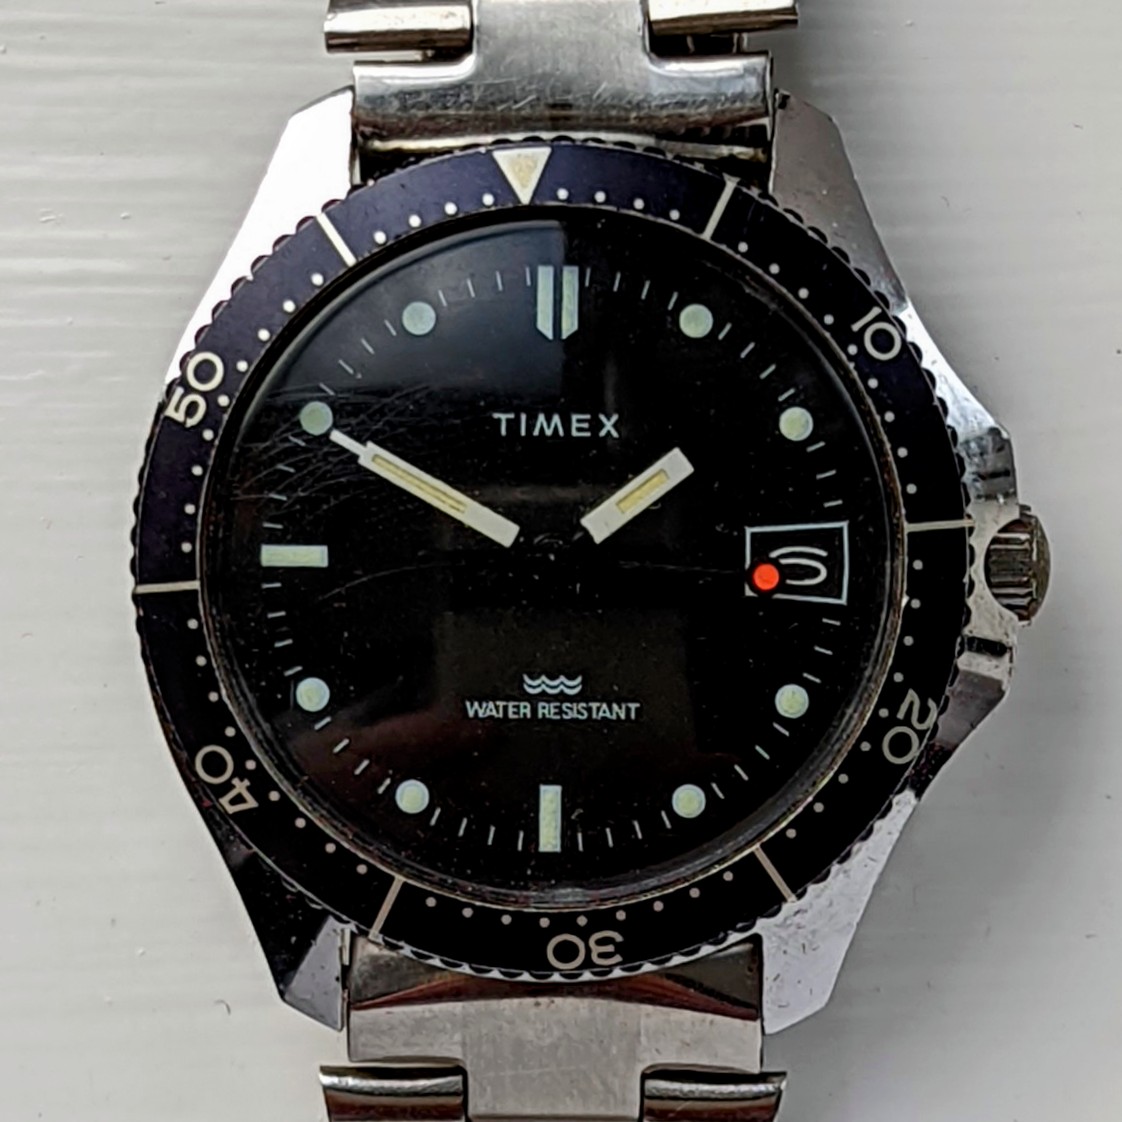 Timex Marlin 24517 10582 [1982] Dive Watch